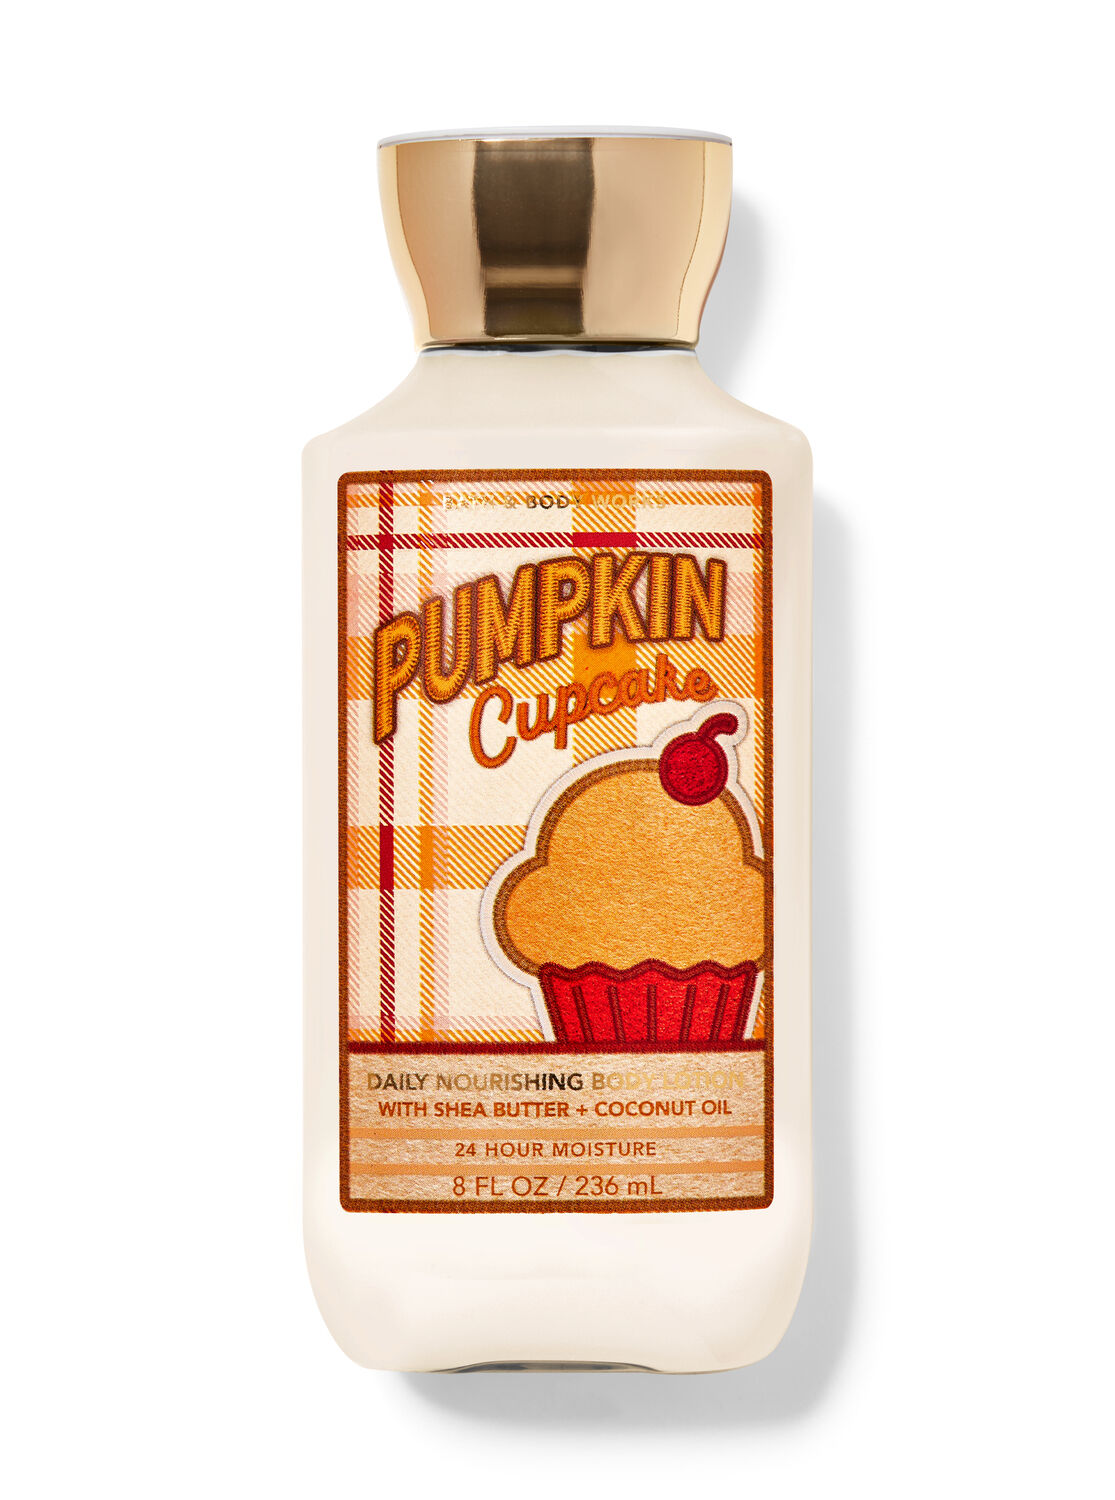 Pumpkin Cupcake Daily Nourishing Body Lotion